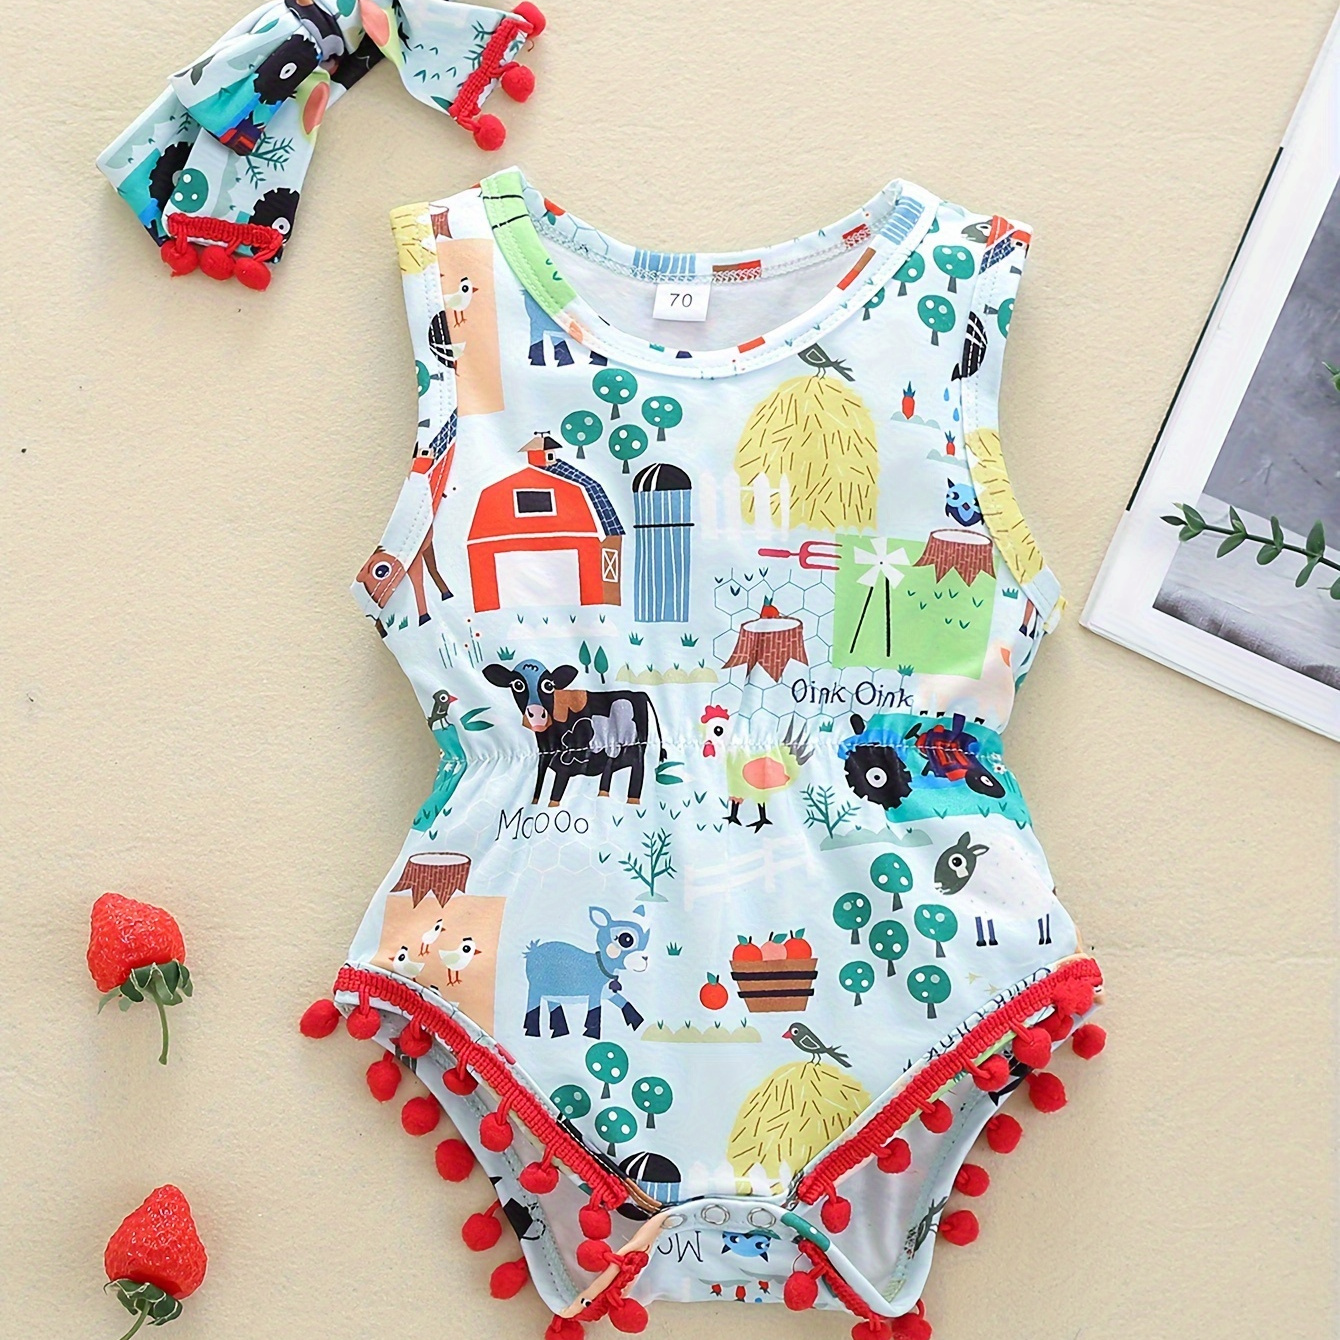 

Baby's Cartoon Farm Element Full Print Cotton Triangle Bodysuit & Headband, Casual Pom-pom Trim Sleeveless Romper, Toddler & Infant Girl's Onesie For Summer, As Gift